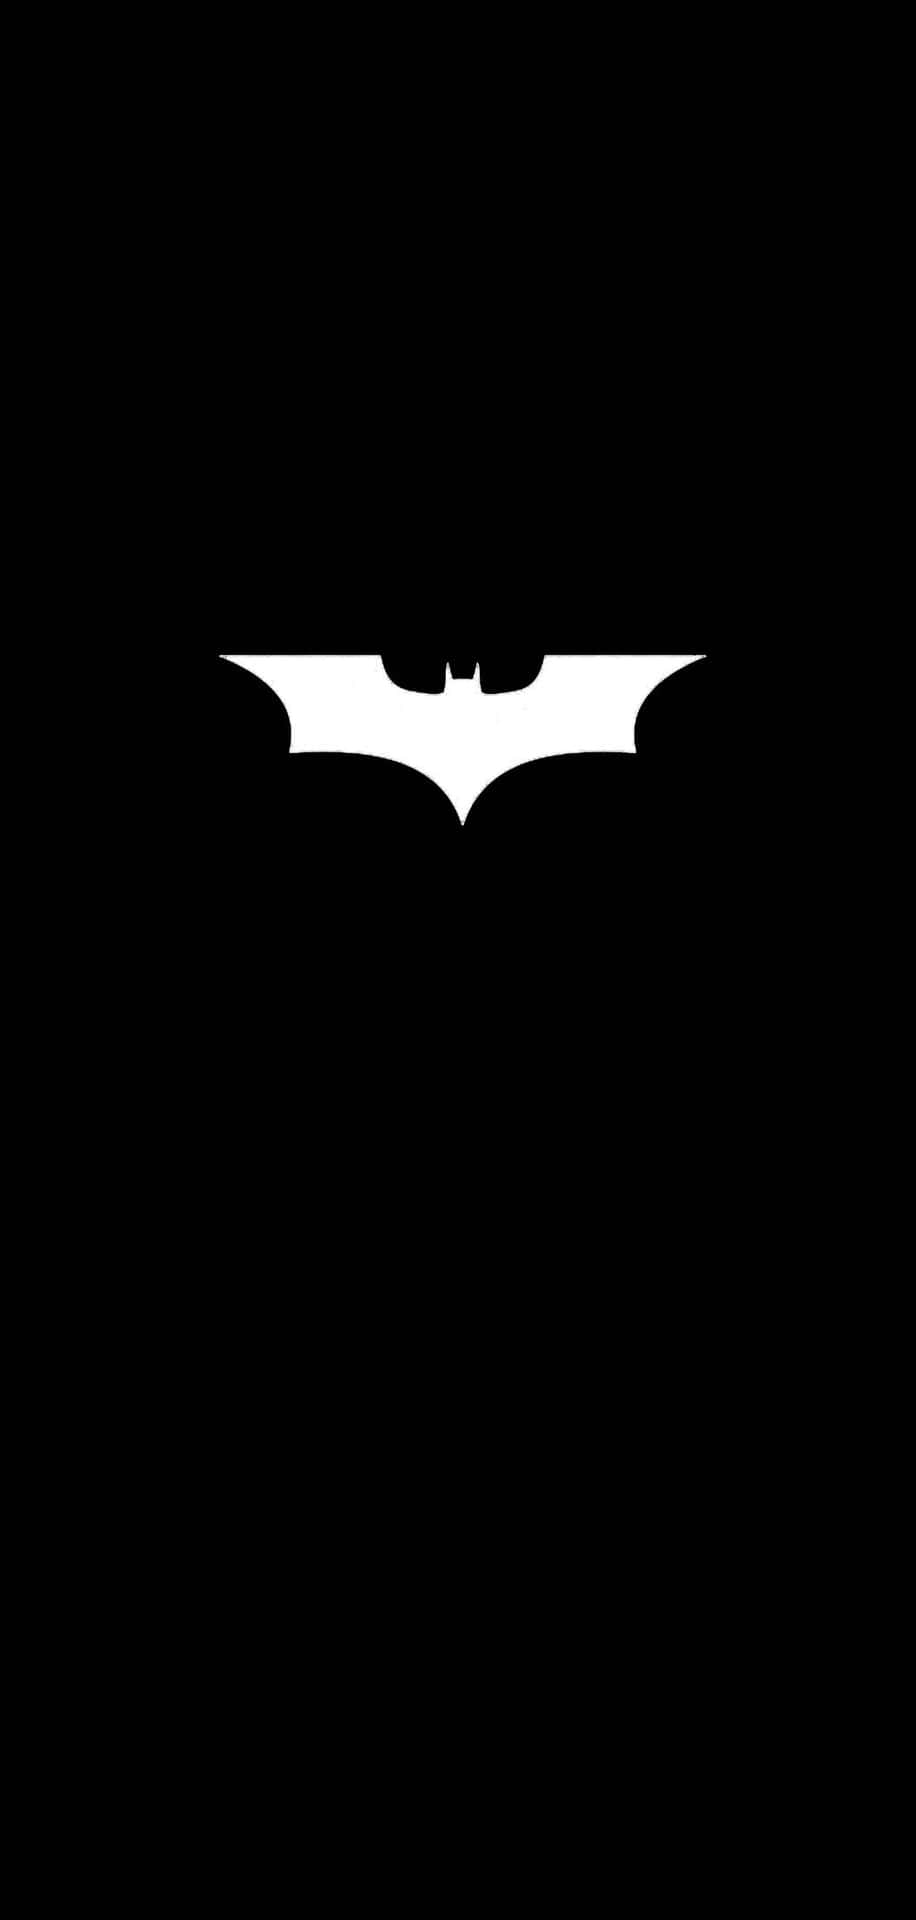 The Dark Knight in Monochrome Wallpaper